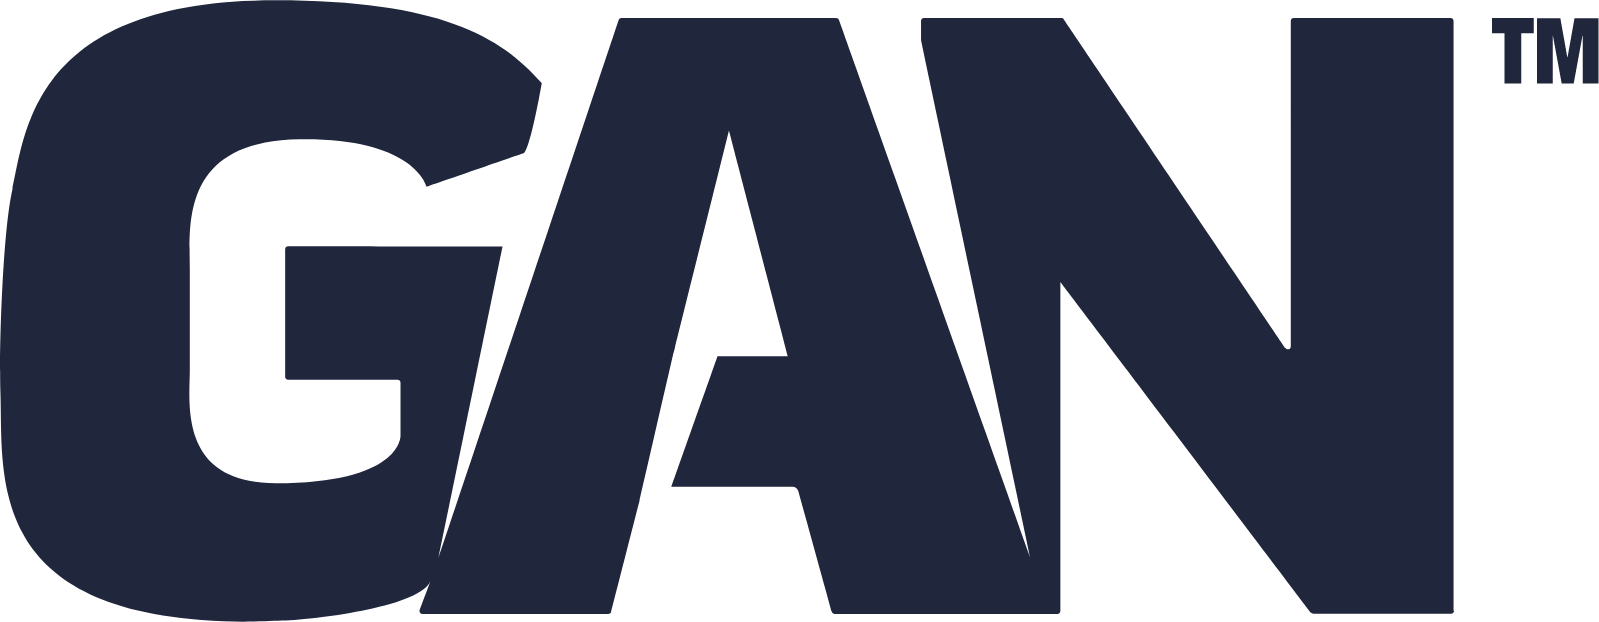 GAN logo large (transparent PNG)